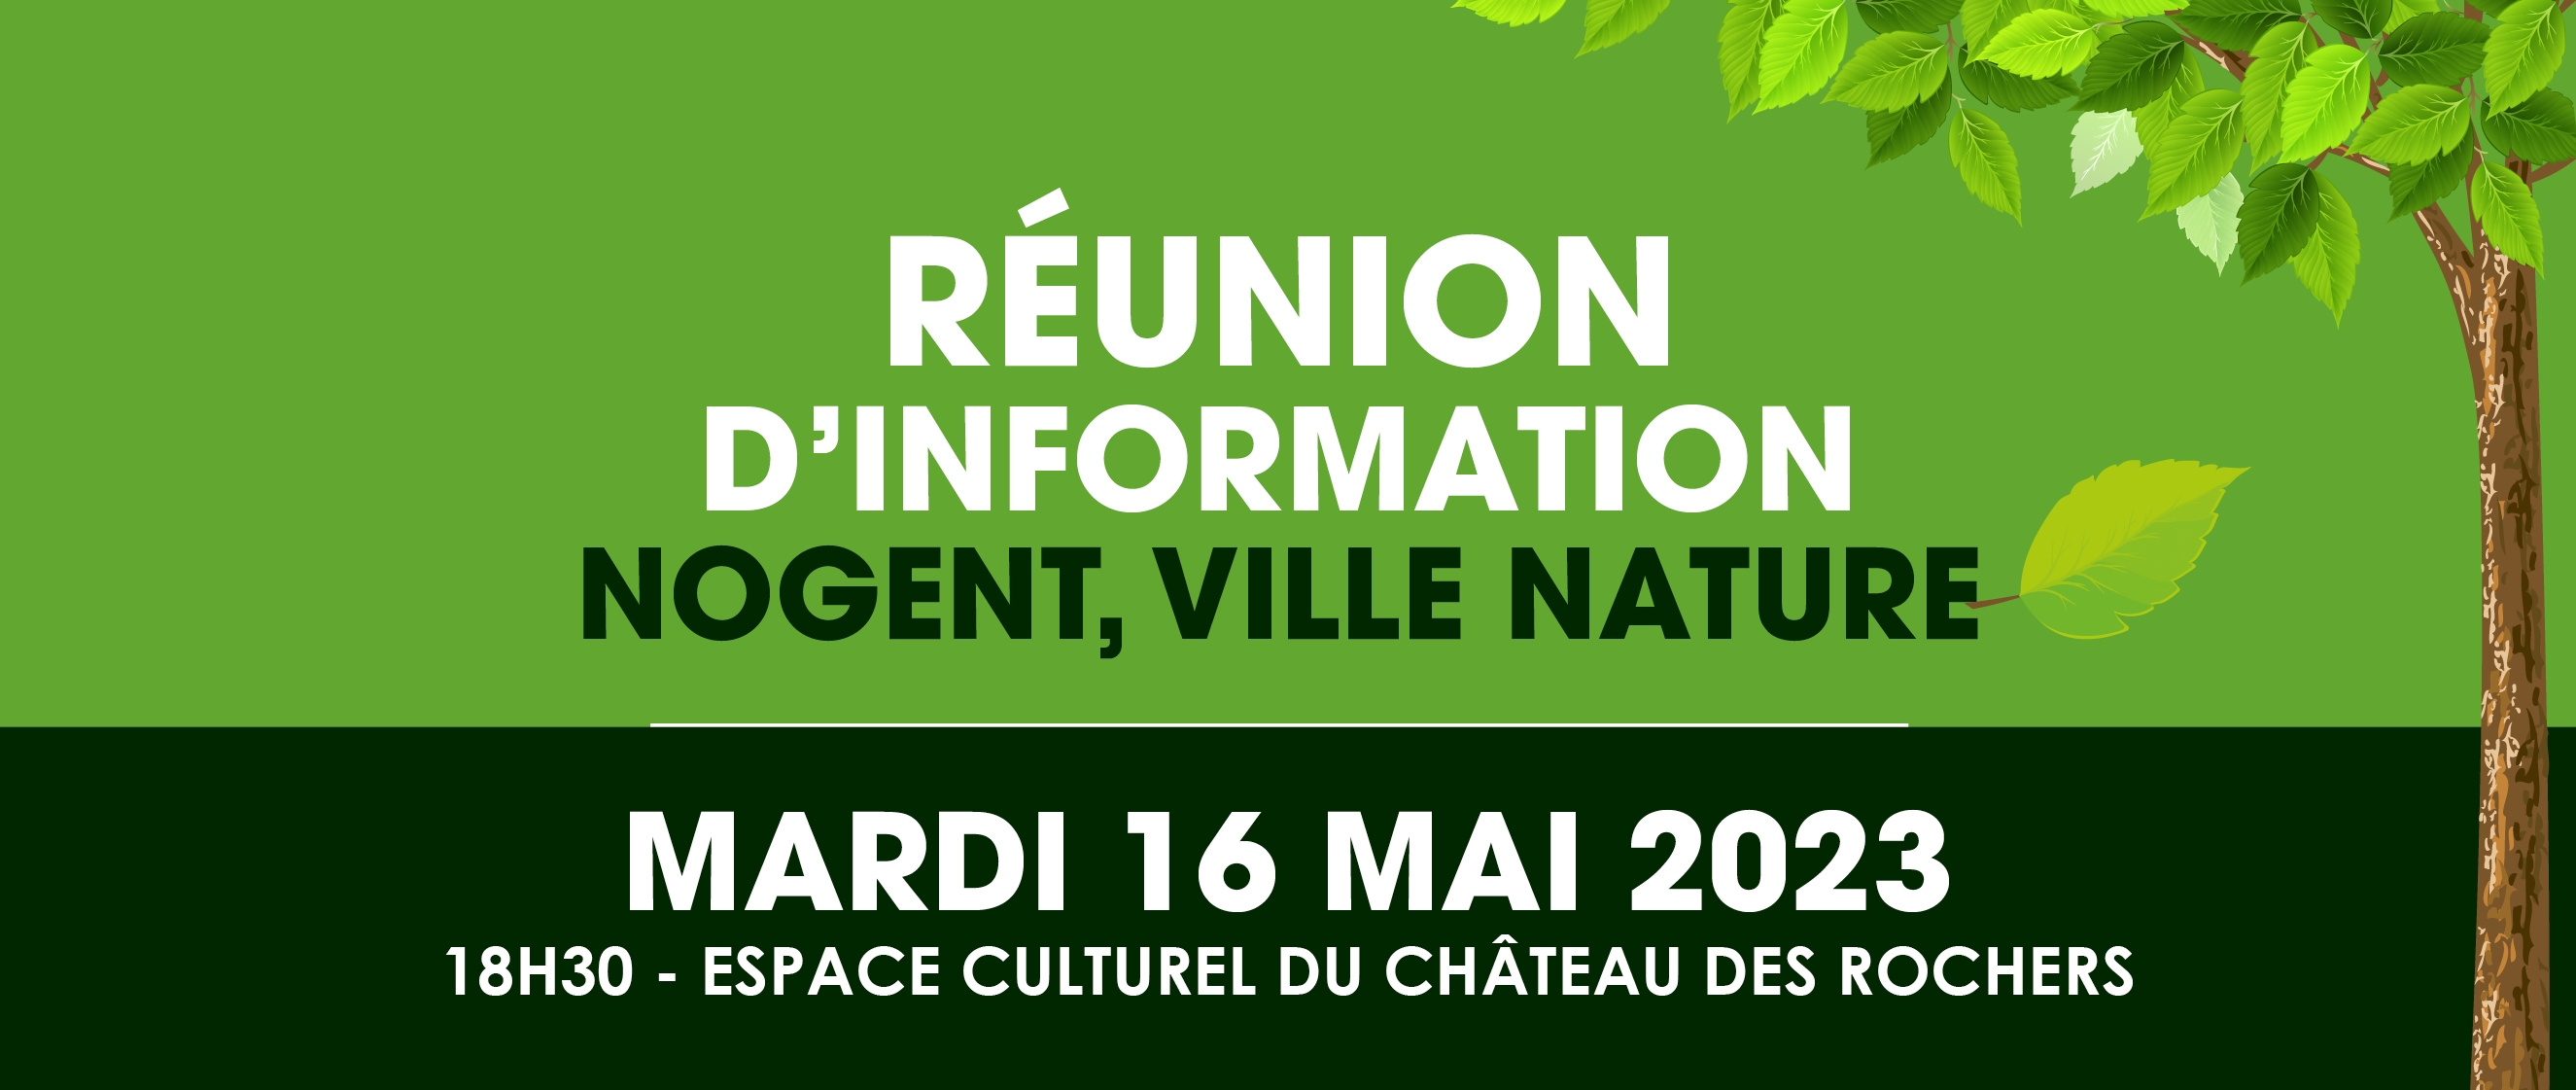 Réunion d'information Nogent ville nature. Le mardi 16 mai à 18h30 à l'Espace Culturel du Château des Rochers